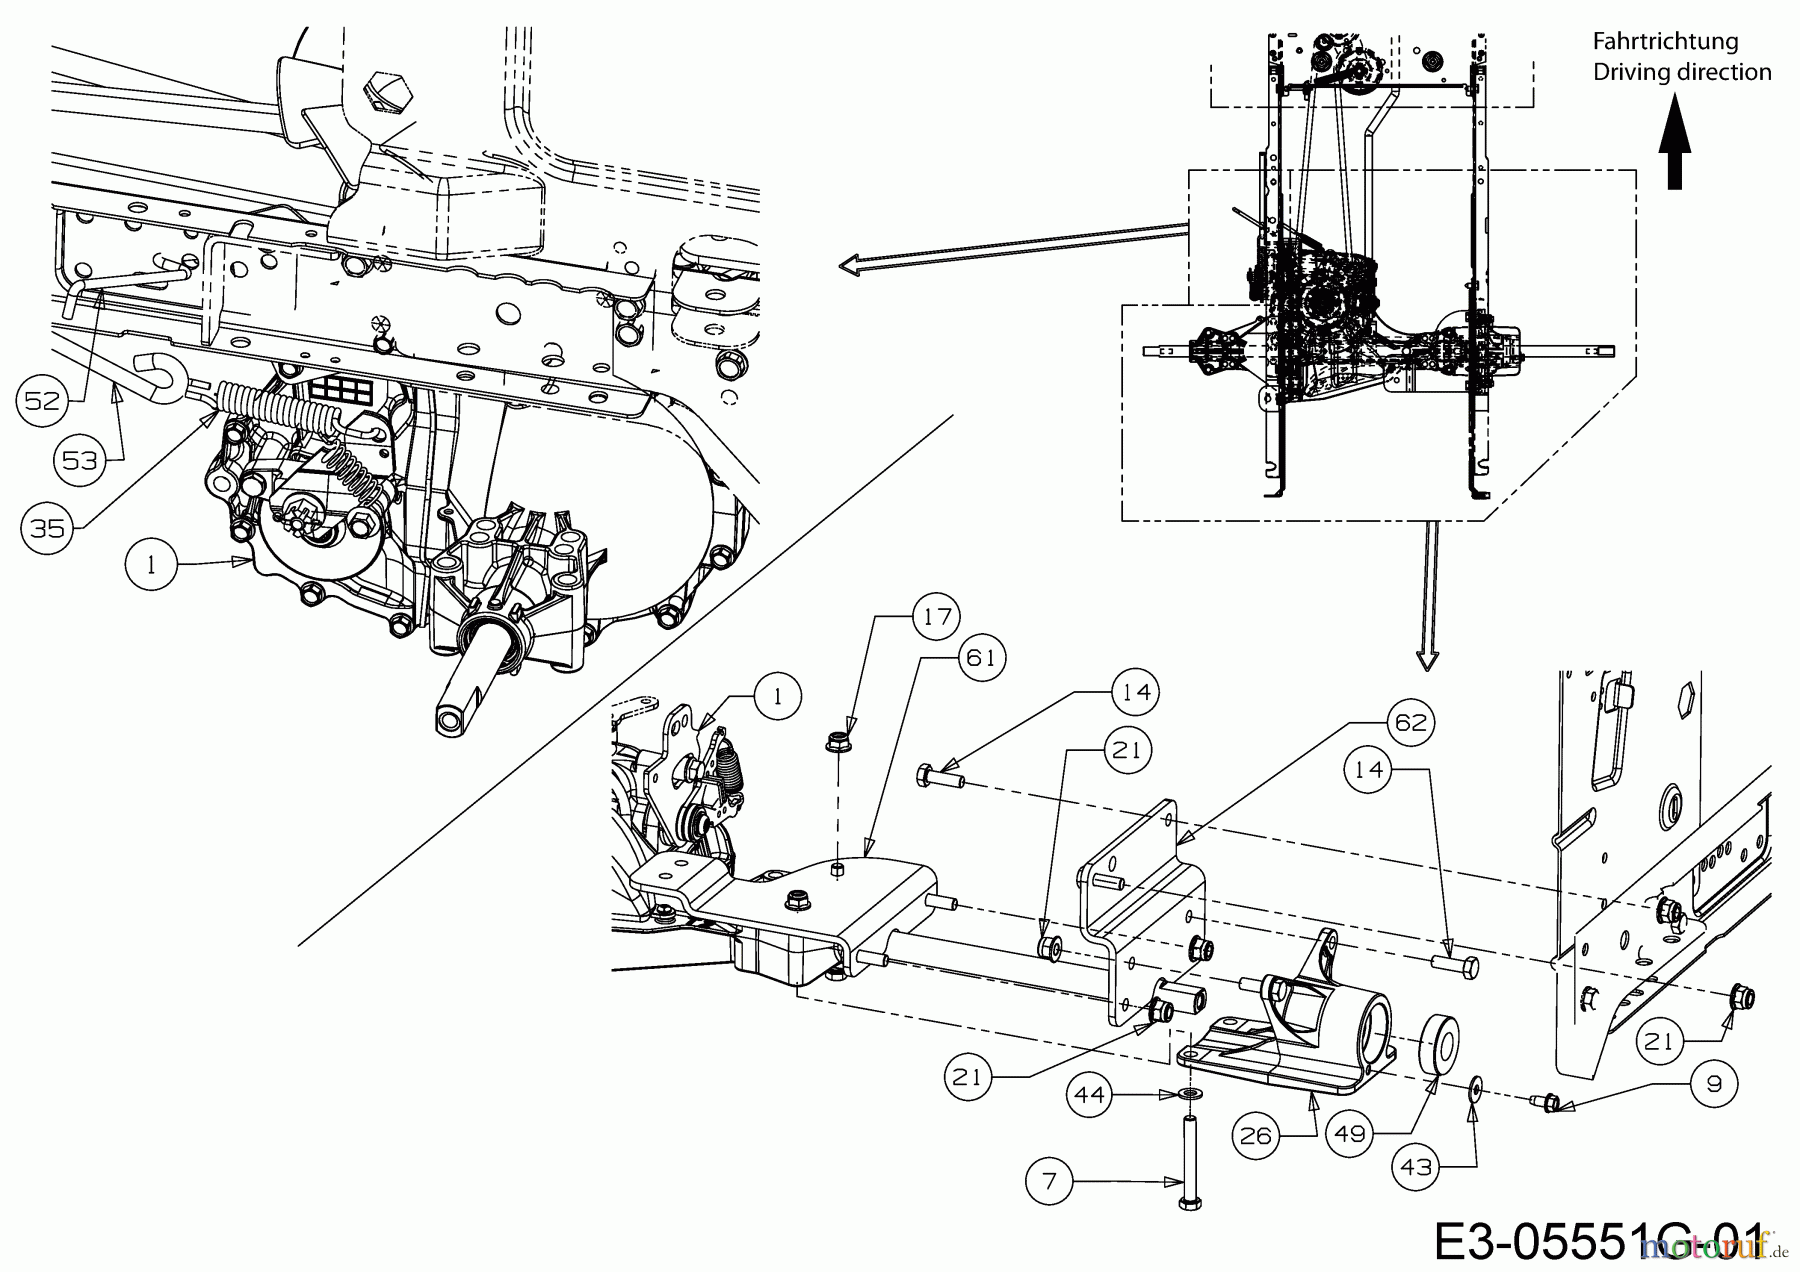  B Power Tracteurs de pelouse BT 145-92 AH 13IM71KE648  (2018) Tige de frein, Levier bypass, Suppport d'essieu droit